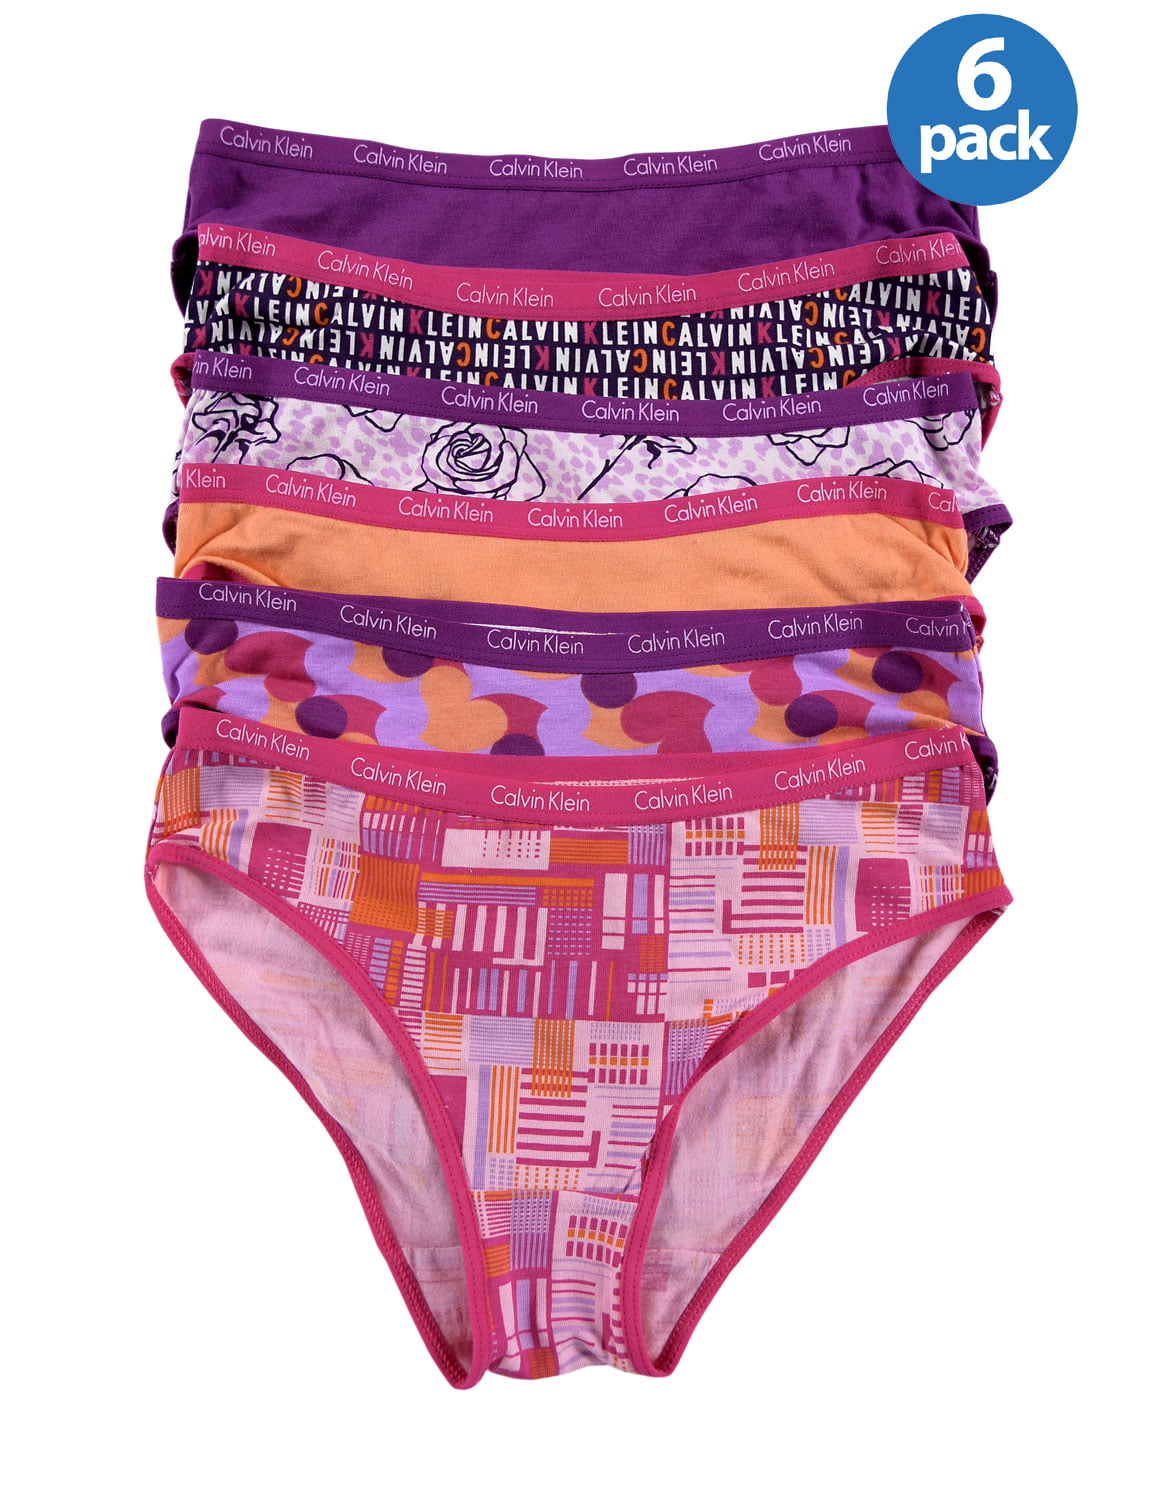 CALVIN KLEIN Girls Comfort Stretch Bikinis Underwear Pink Assortment 6 Pack  